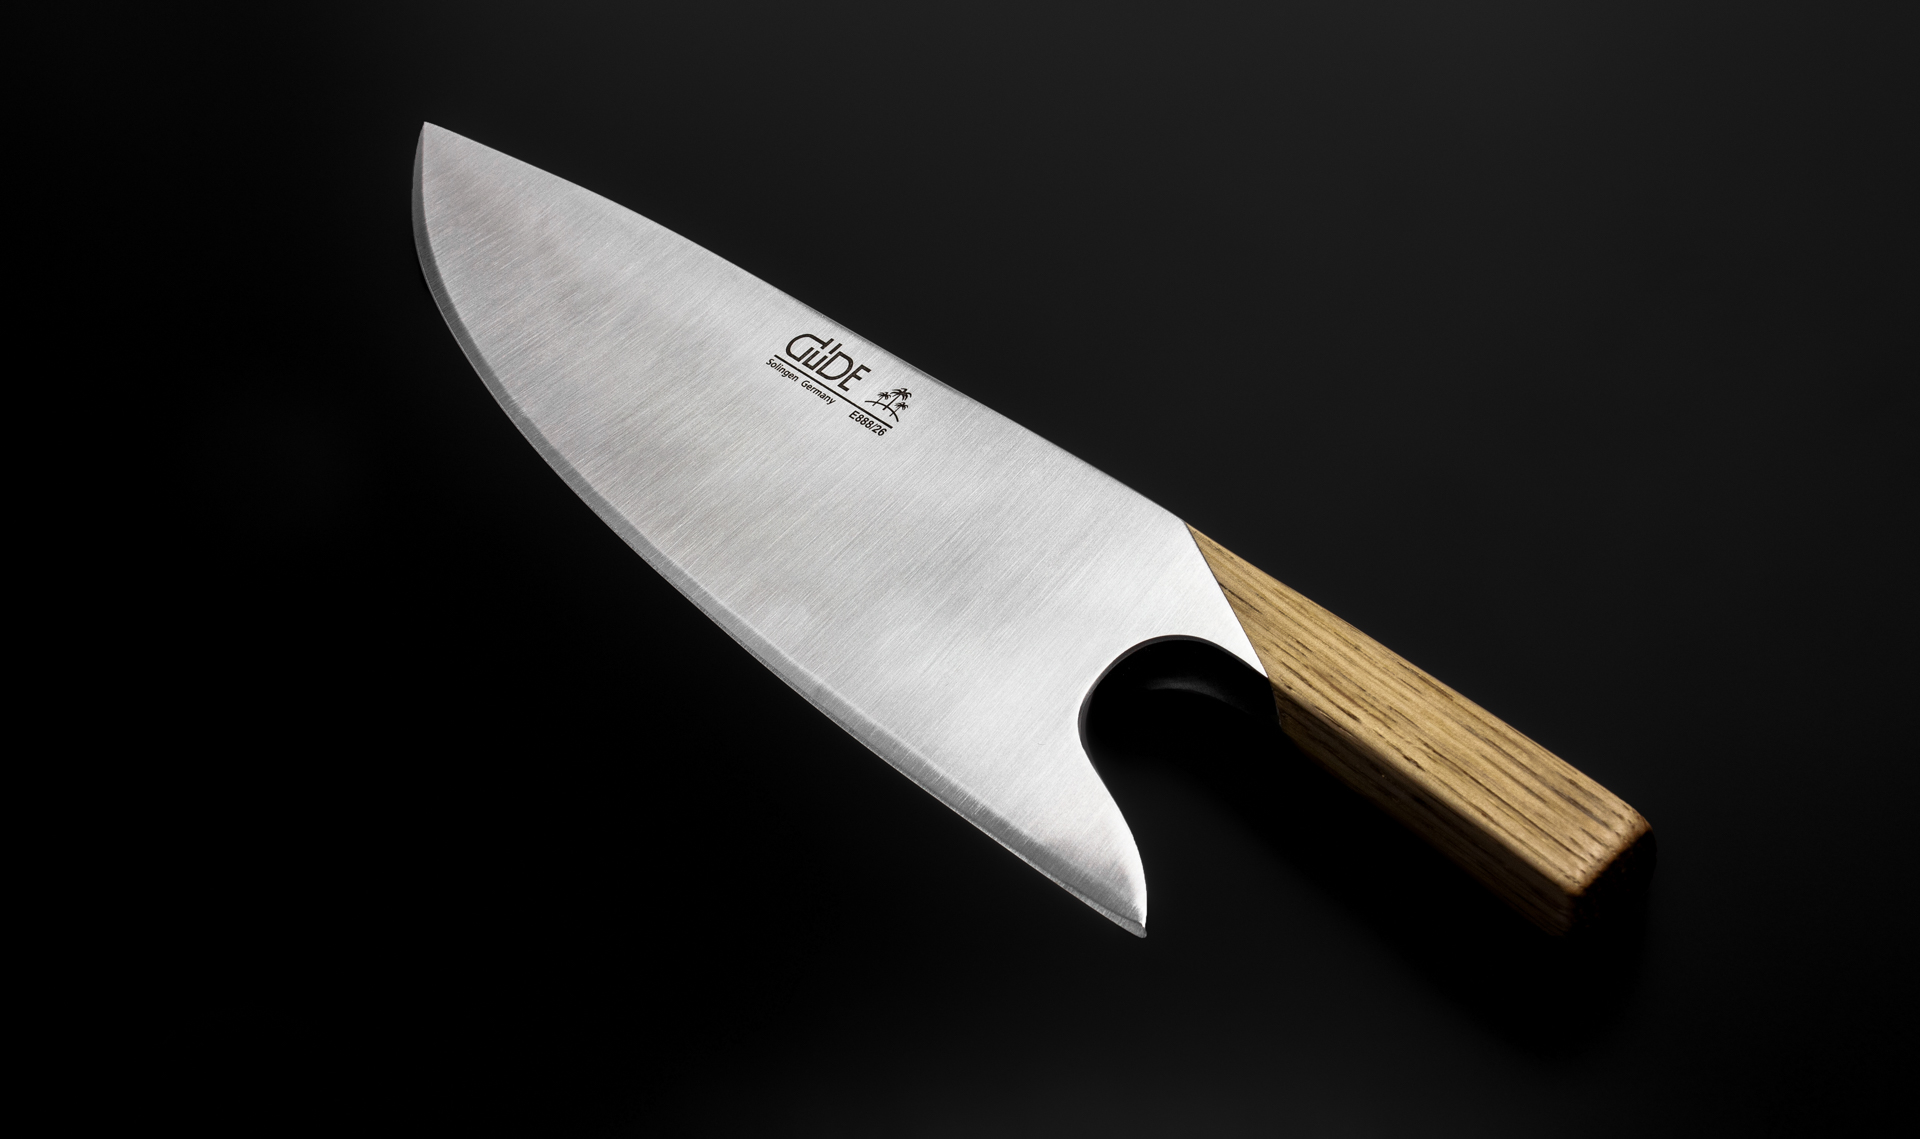 Visuel de THE KNIFE. - GÜDE THE KNIFE. Couteau de chef - La (re-)découverte de la coupe.